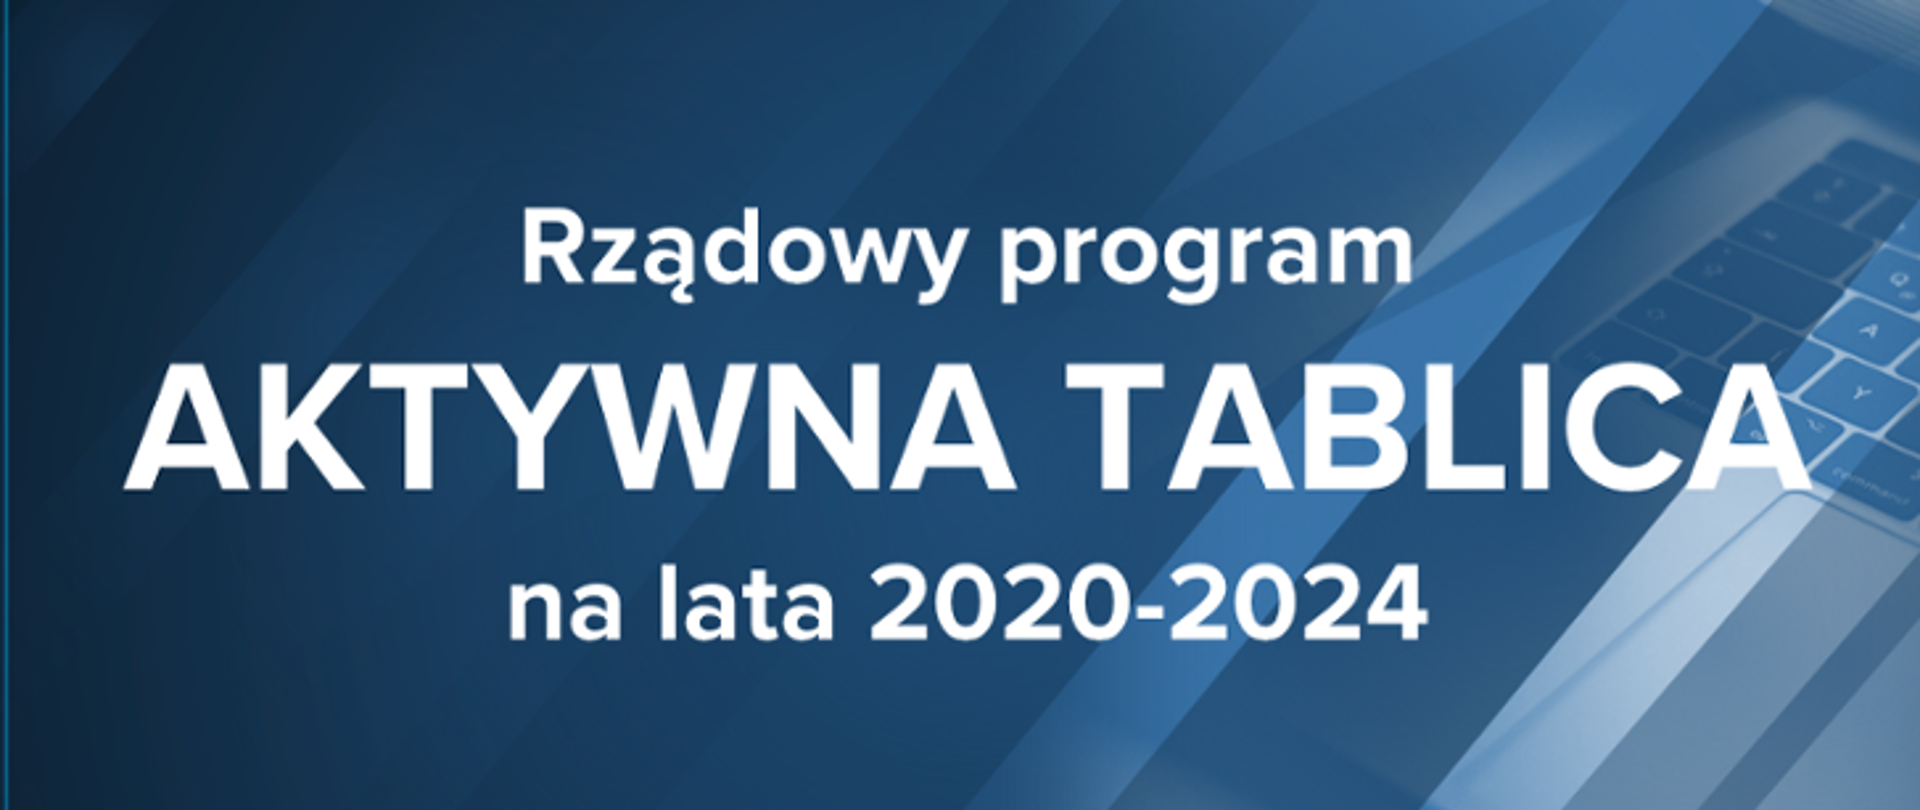 Grafika z tekstem "Rządowy program Aktywna Tablica na lata 2020-2024